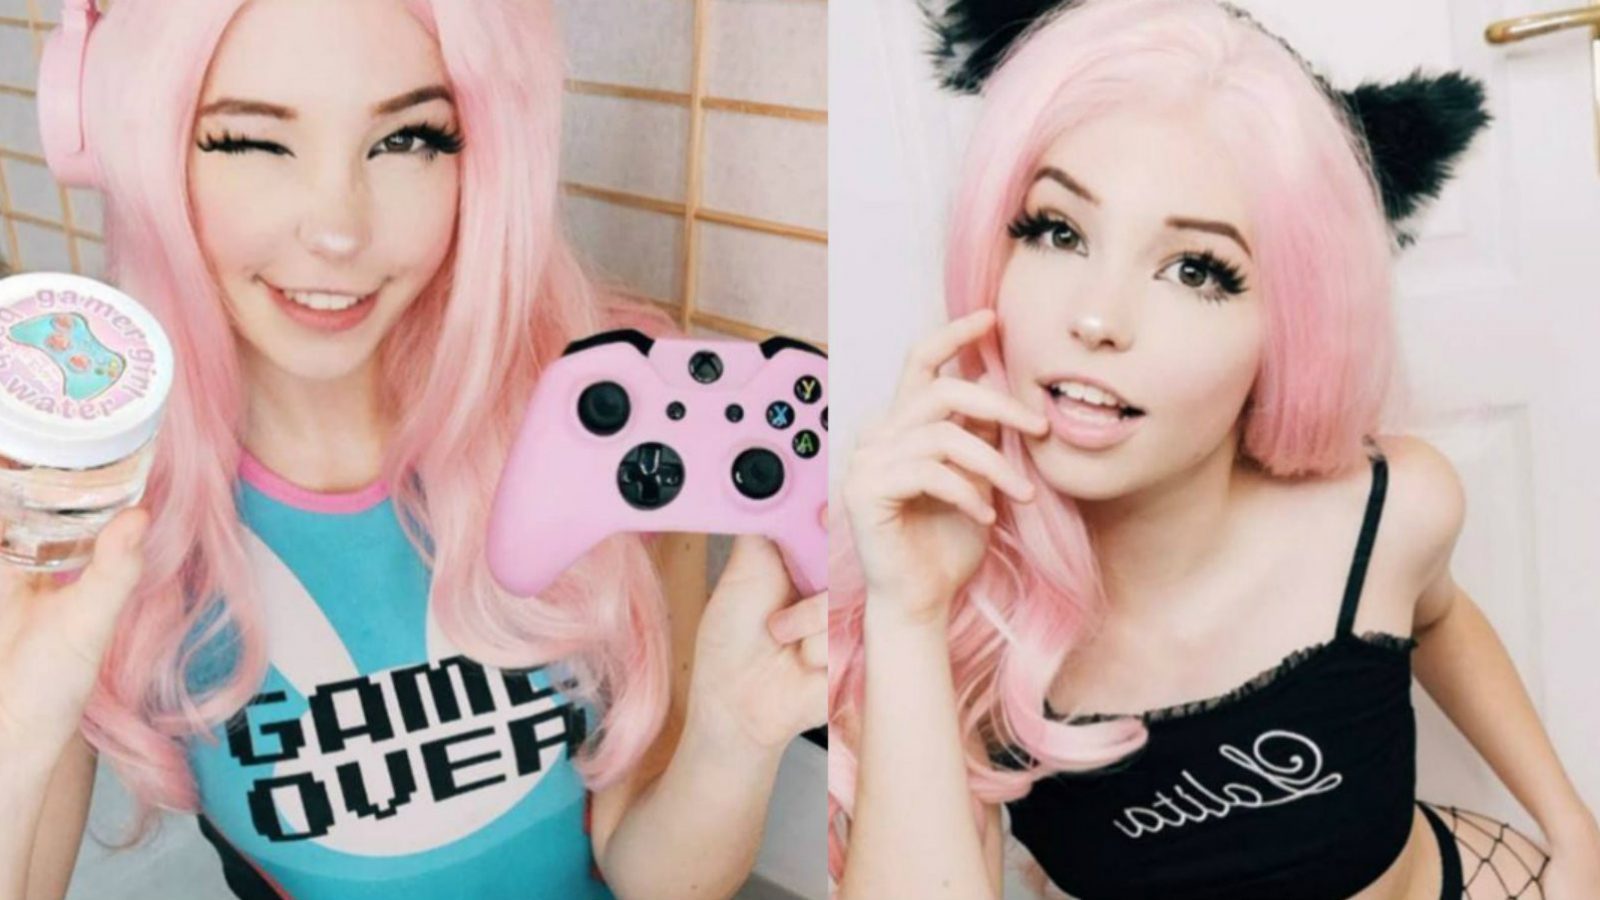 Gamer Girl' Belle Delphine is Back on the Internet